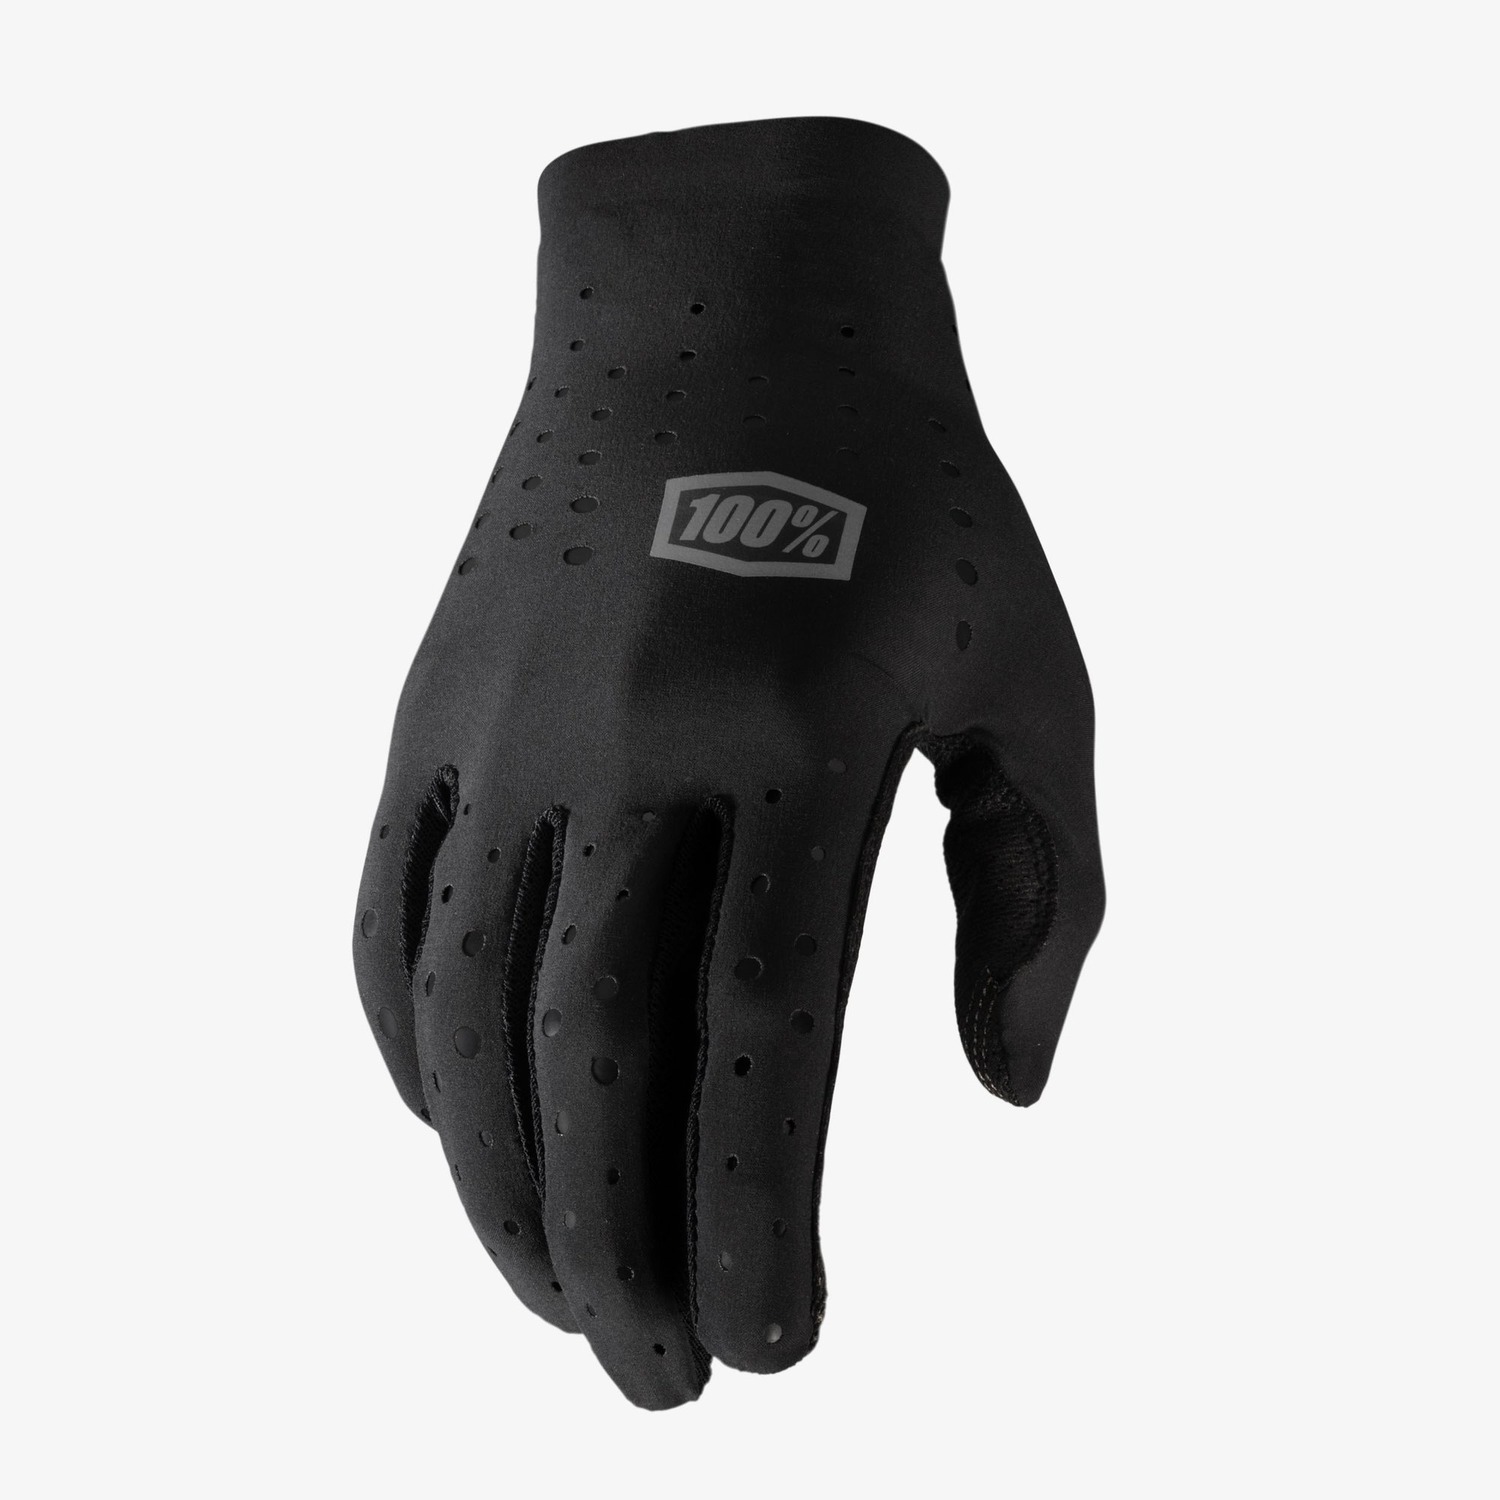 rukavice SLING, 100% - USA (černá)